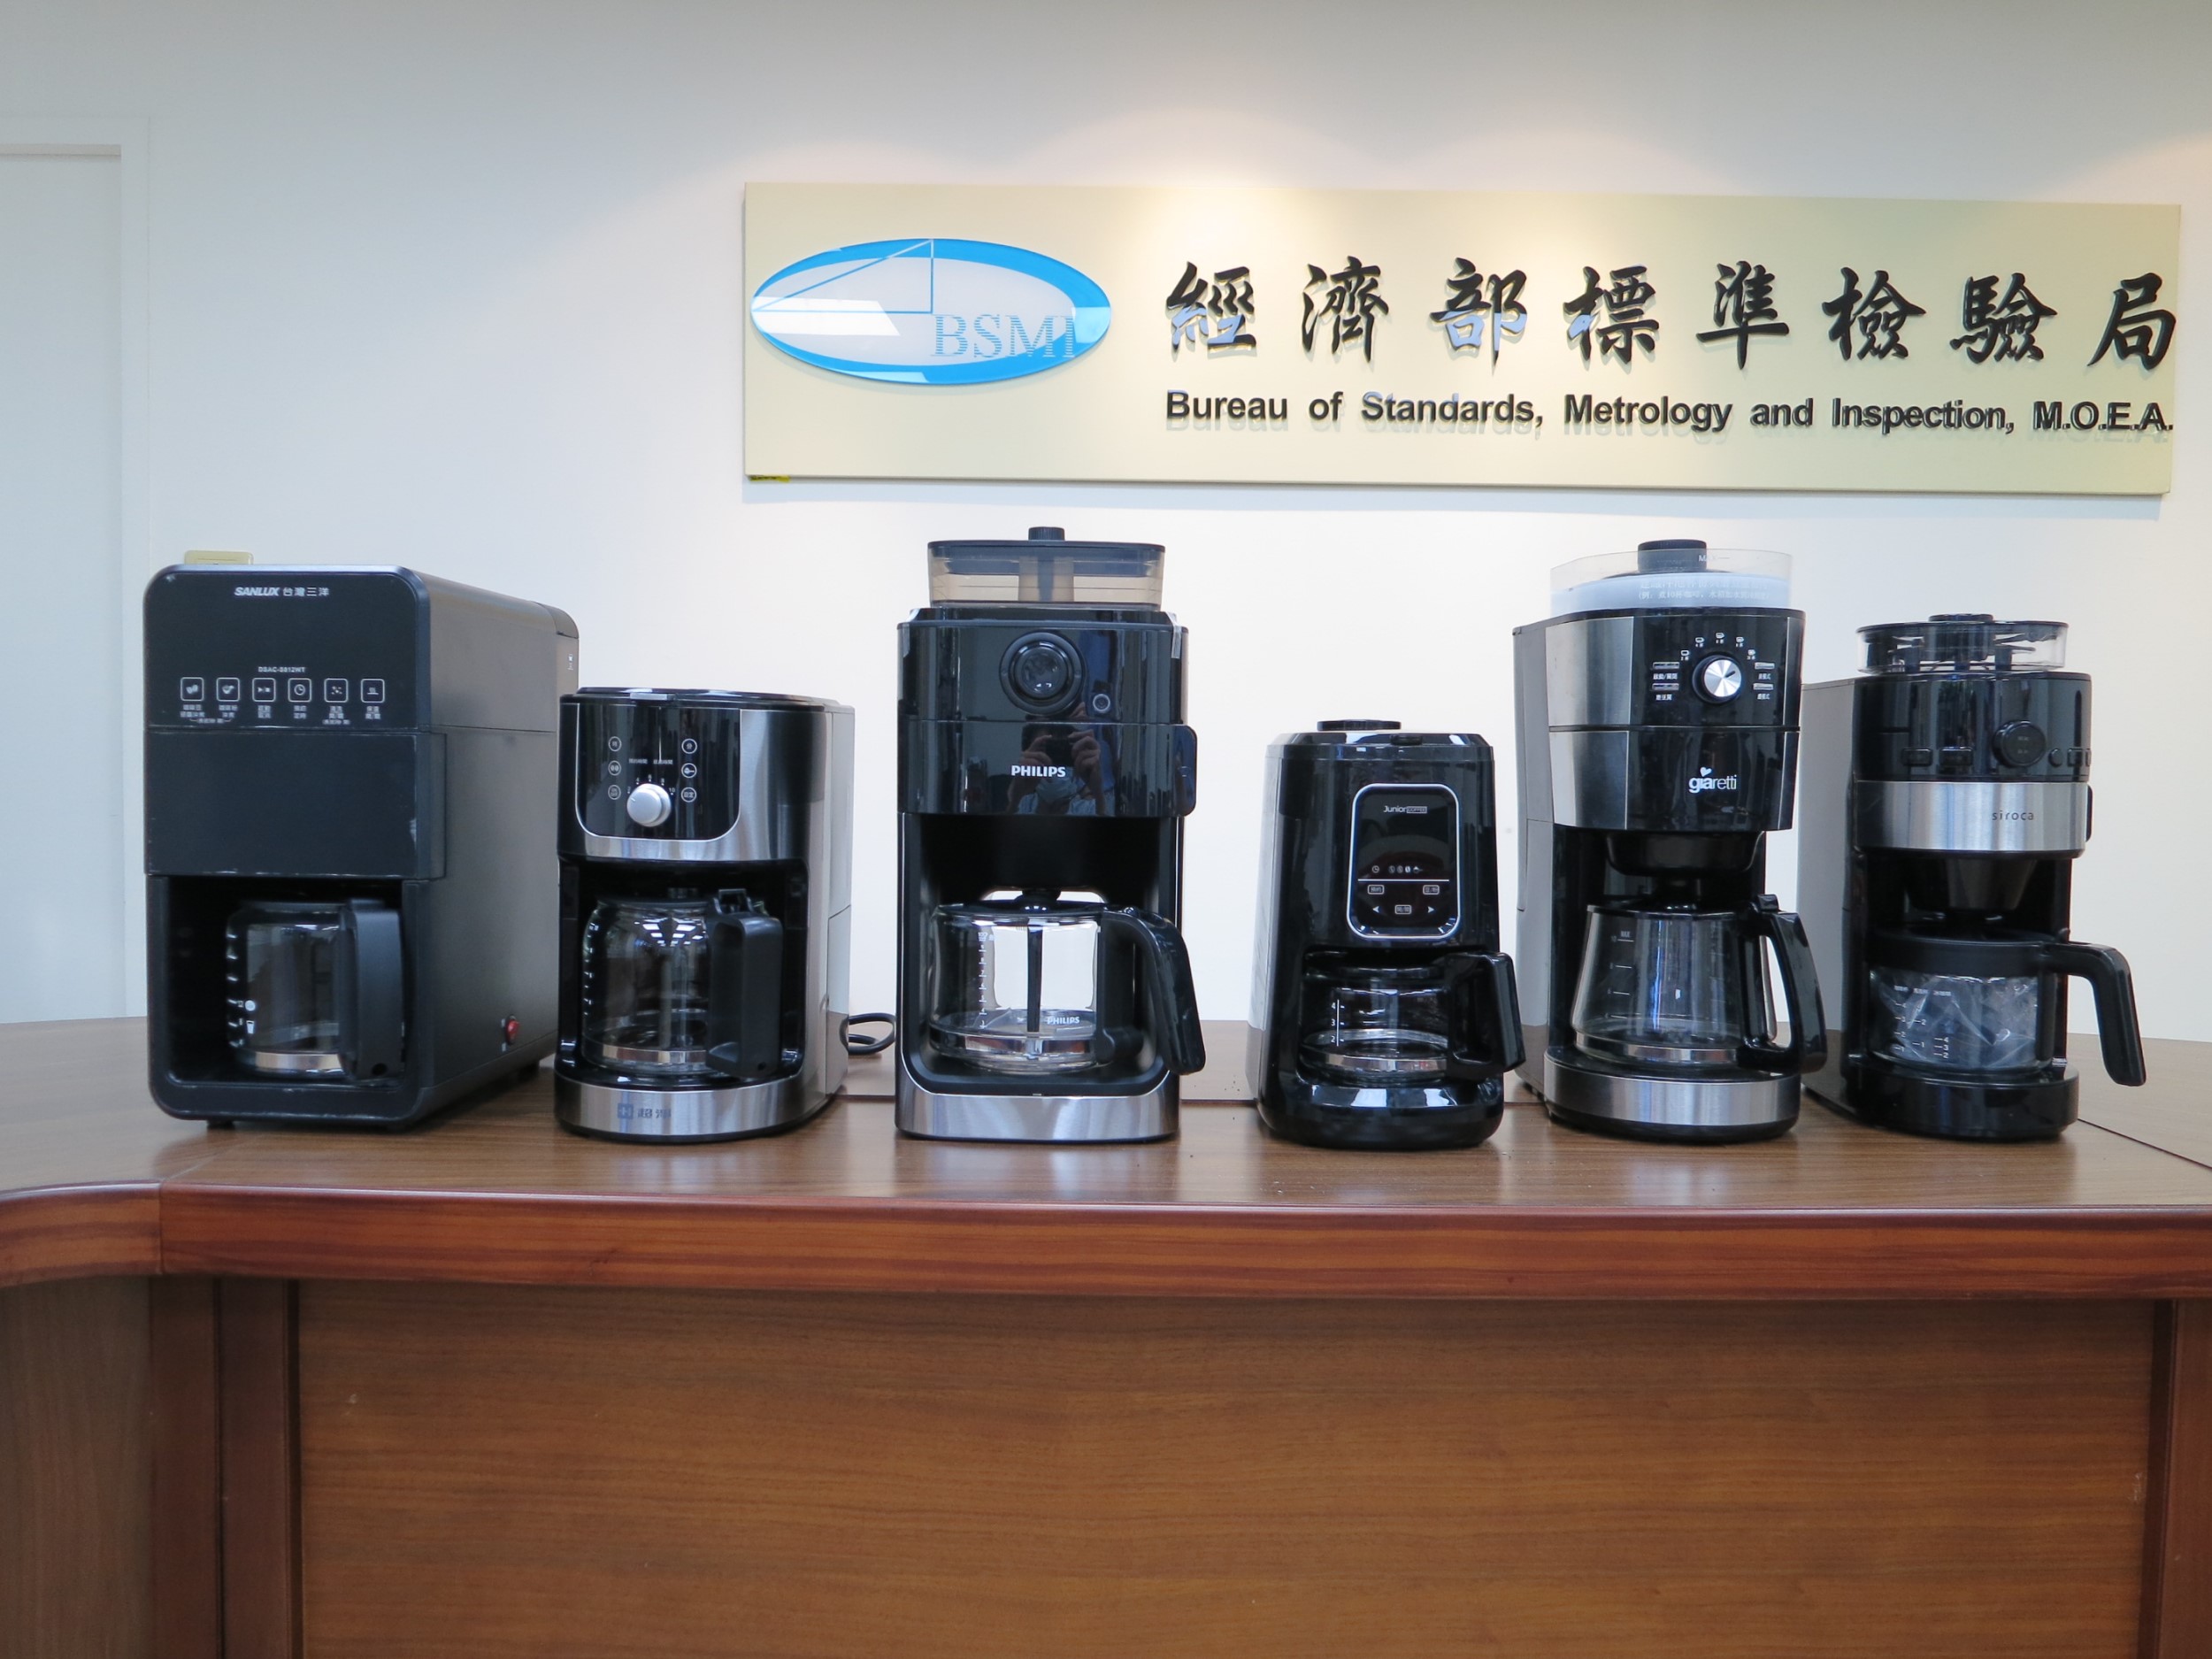 行政院消費者保護處與經濟部標準檢驗局共同公布市售「全自動咖啡機」檢測結果